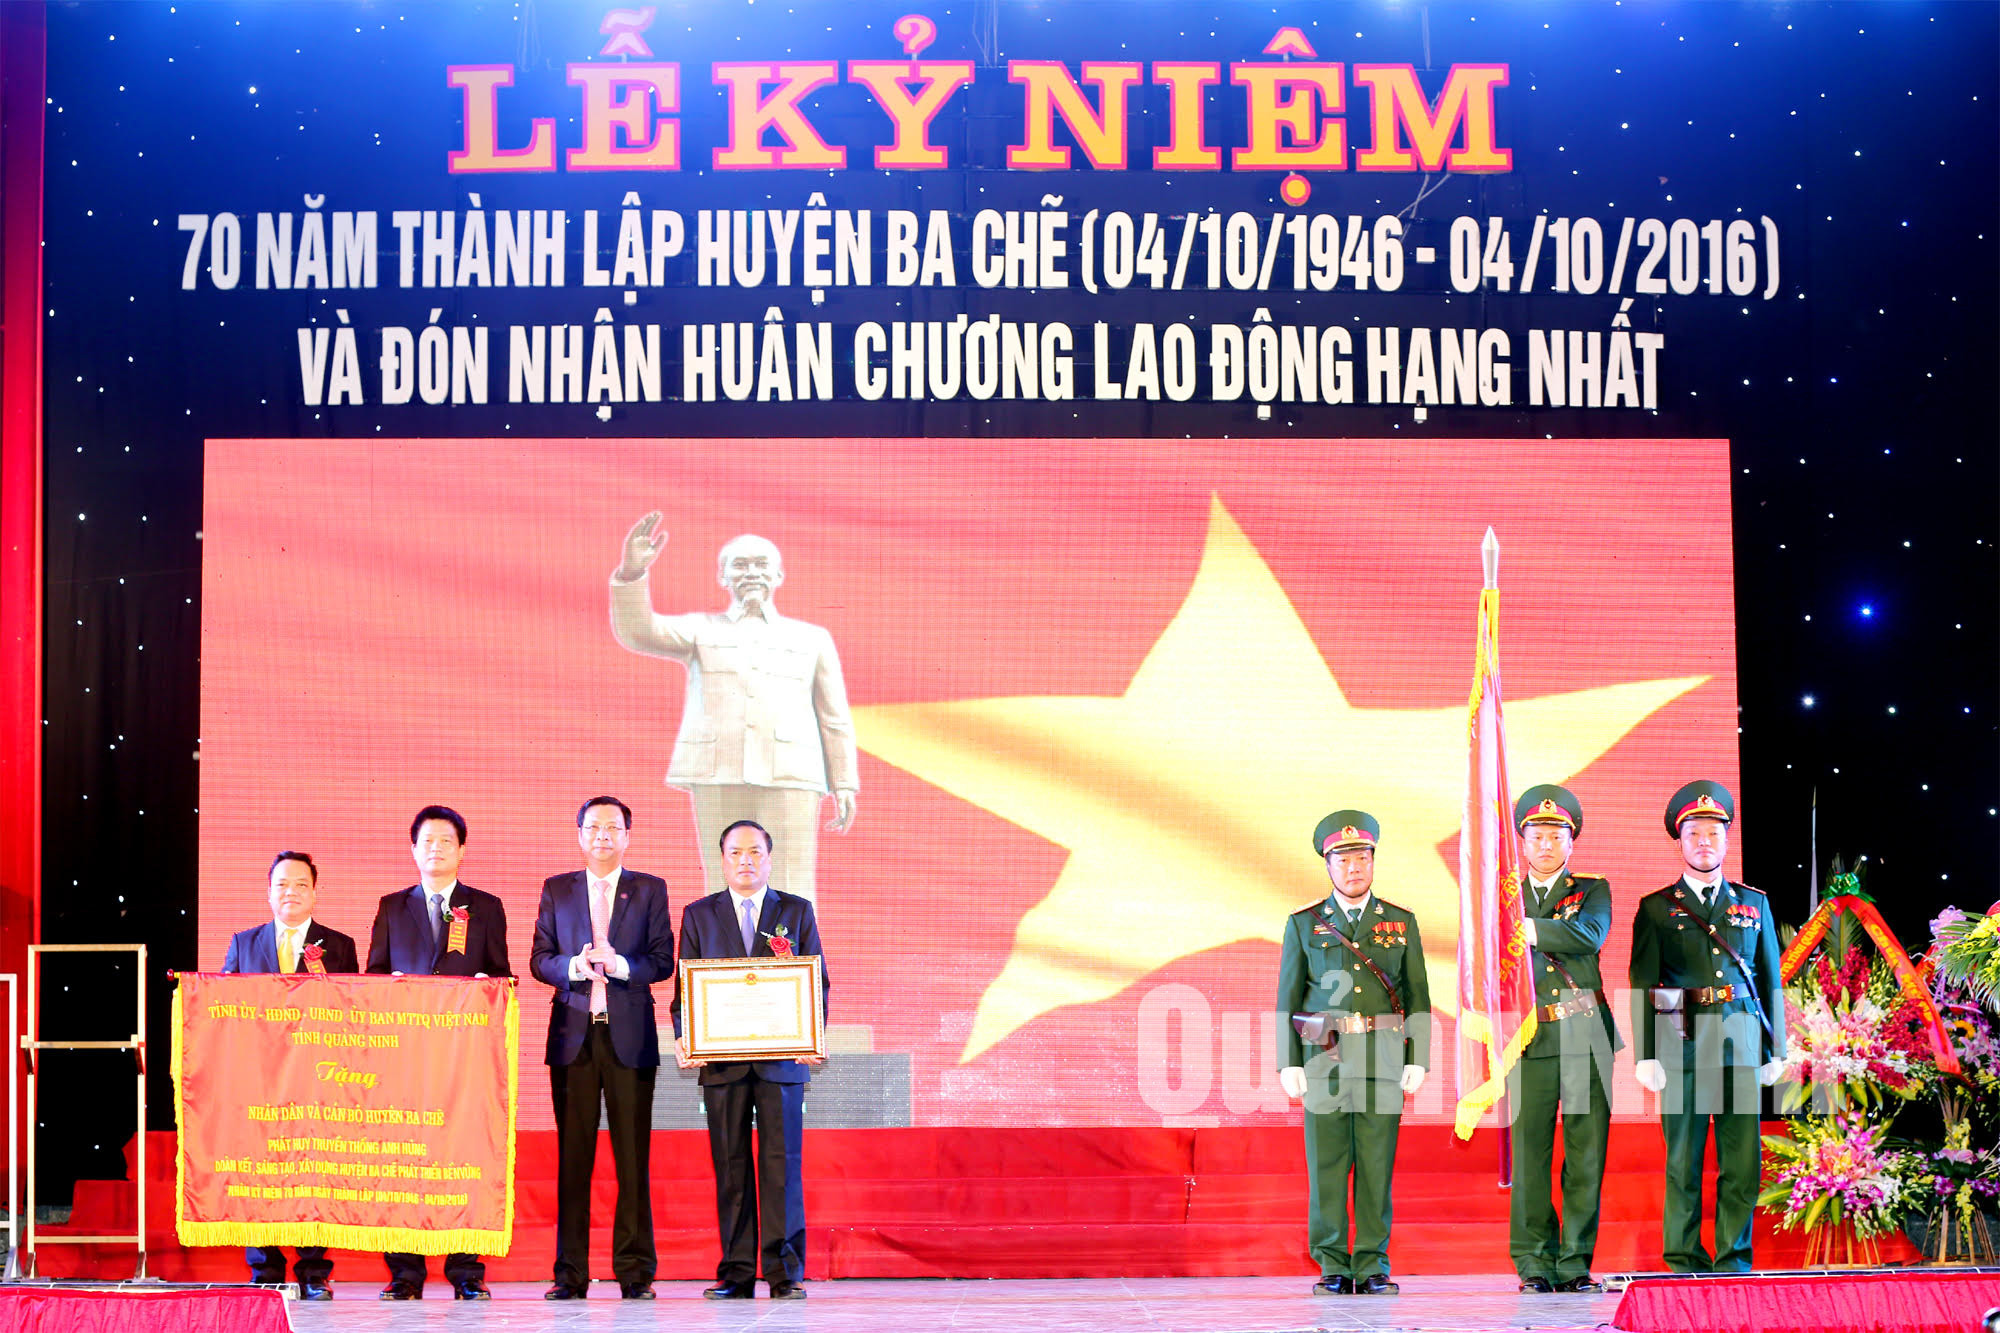 và tặng bức trướng của tỉnh Quảng Ninh cho Đảng bộ, chính quyền và nhân dân các dân tộc Ba Chẽ.